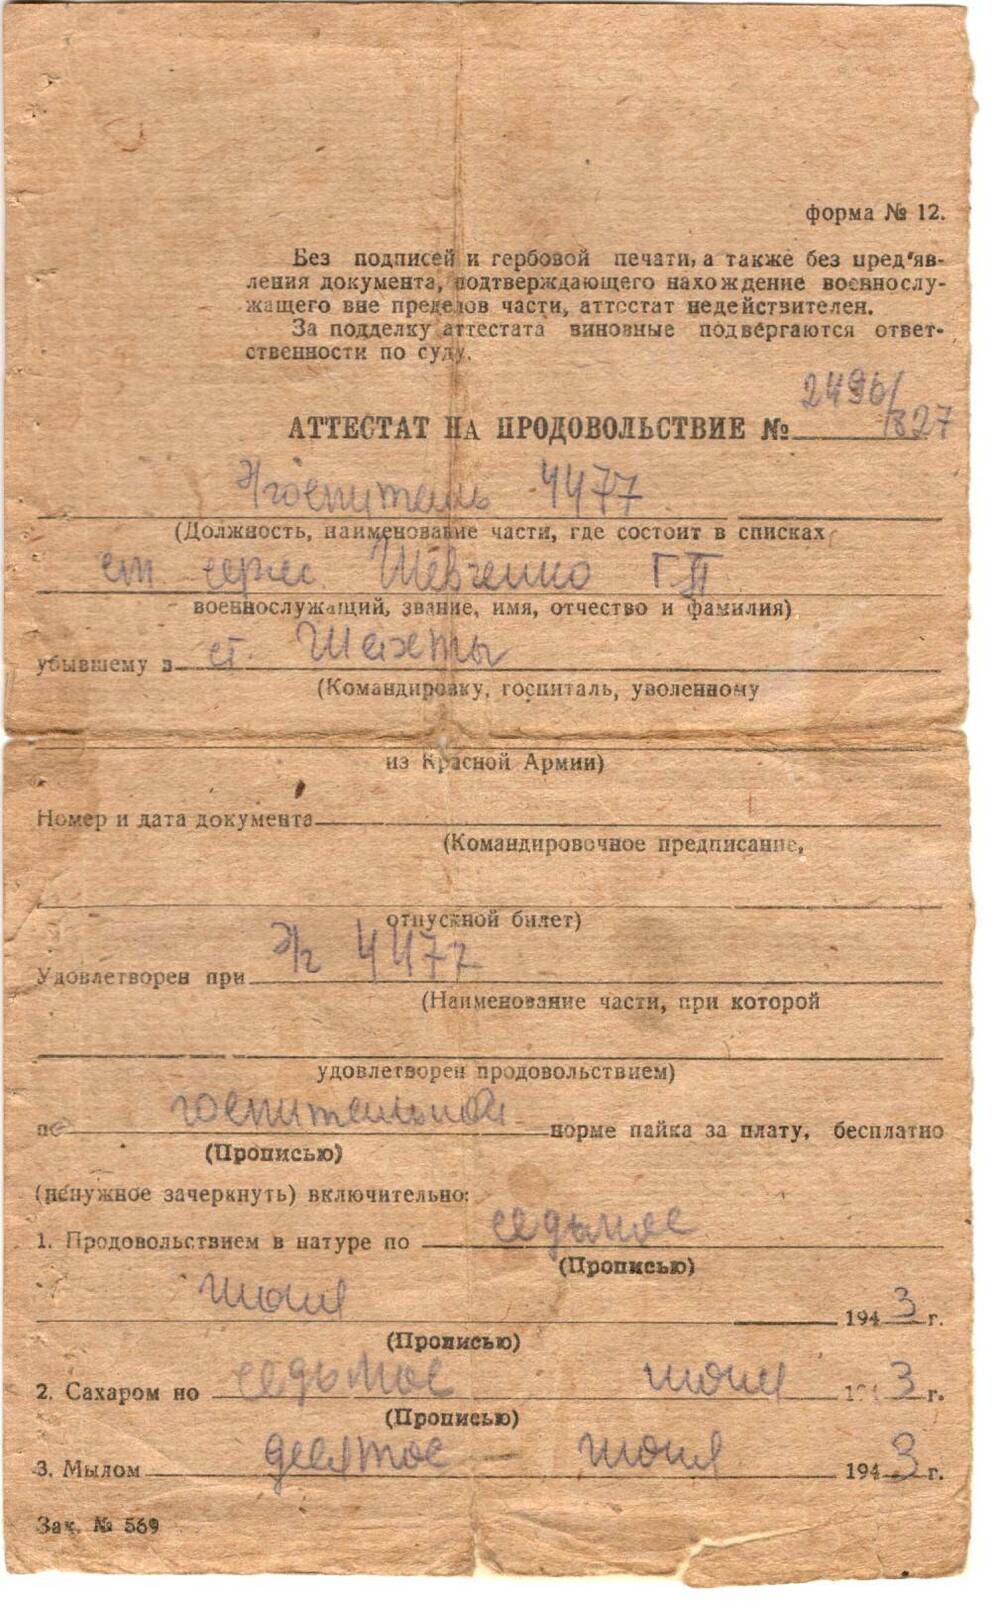 Аттестат на продовольствие №2496/327 ст. сержанту Шевченко Г.П., выдан Эвакогоспиталем №4477 от 7.07.1943 г.